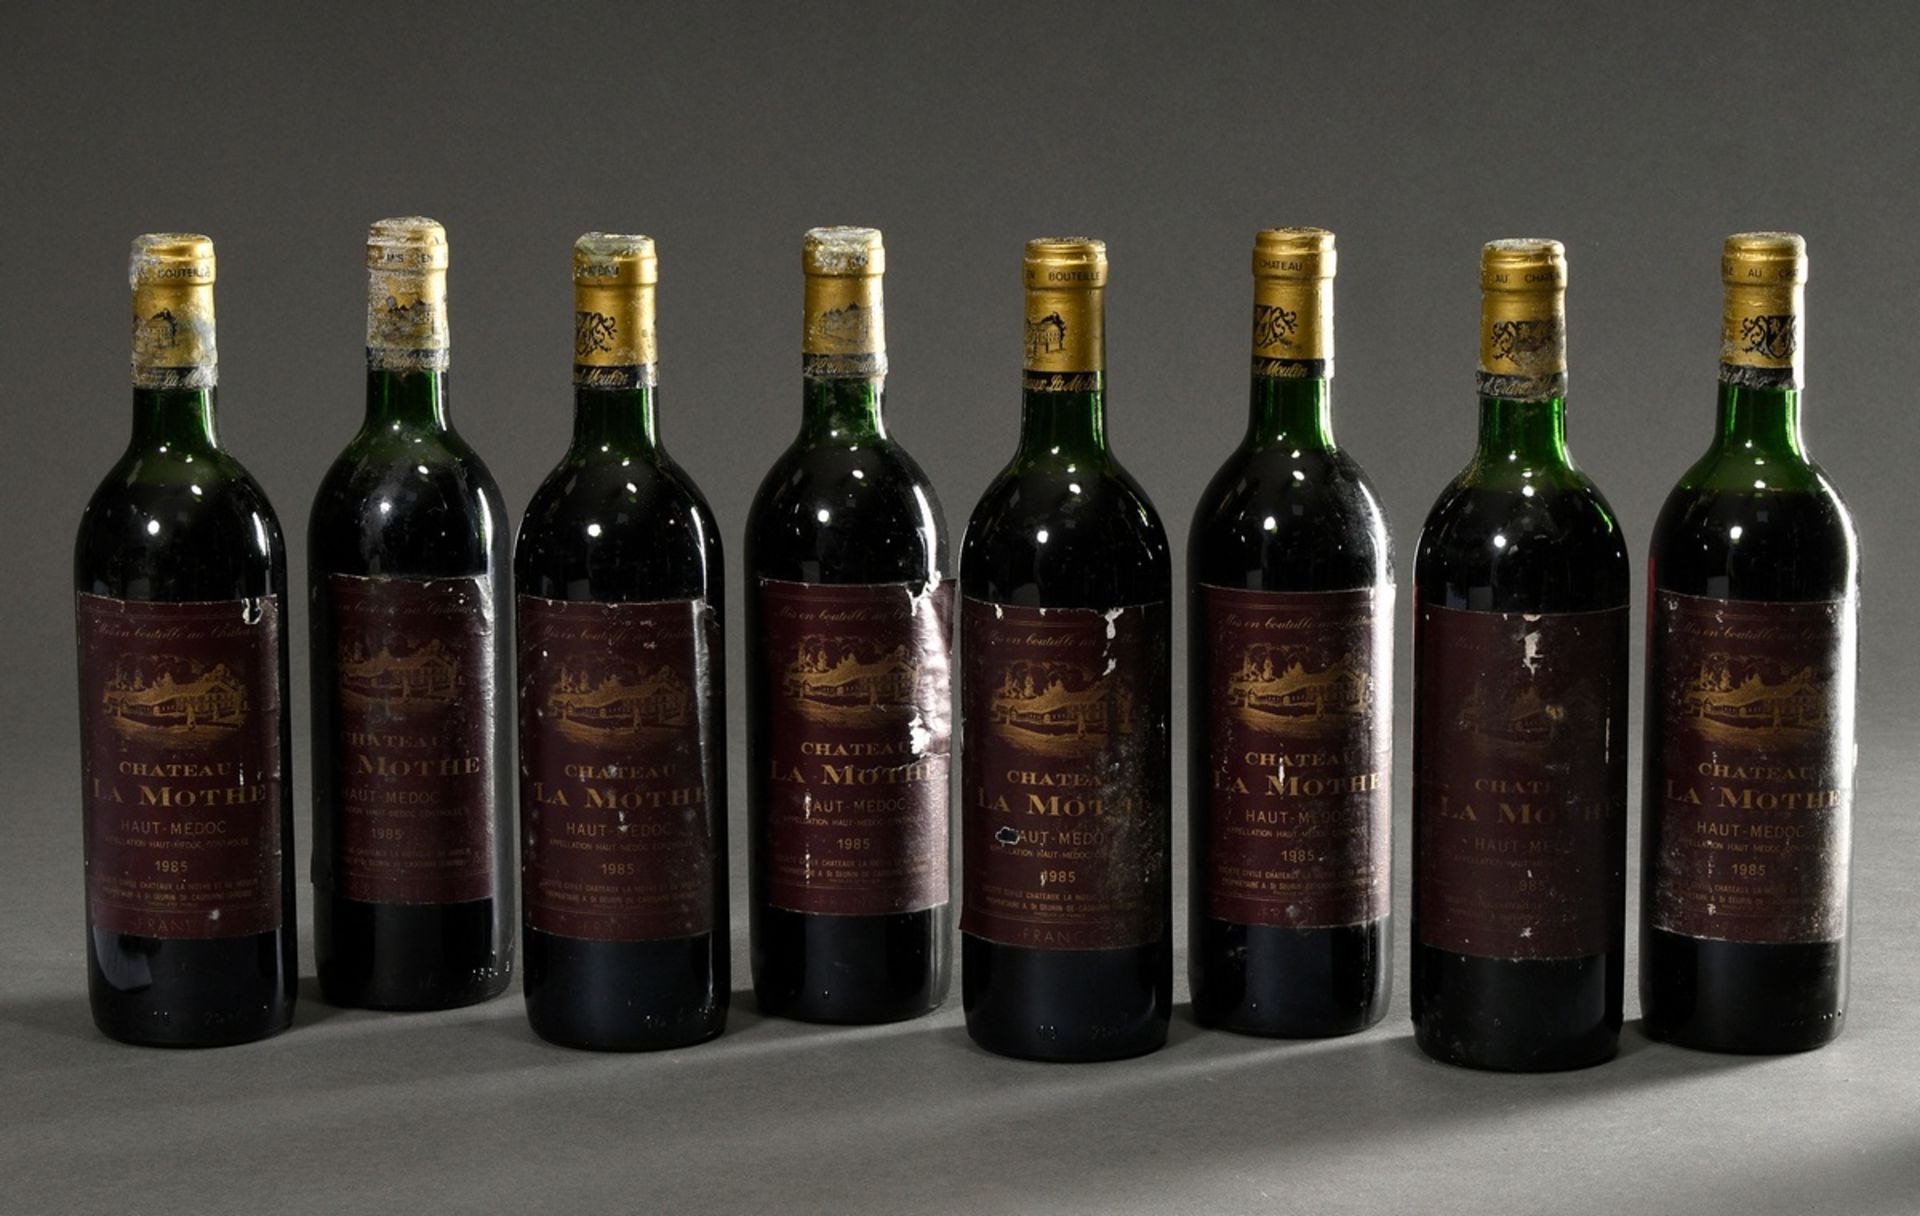 6 Flaschen 1985 Chateau La Mothe, mebac, Haut Medoc, Frankreich, Rotwein, 0,75l, durchgehend gute K